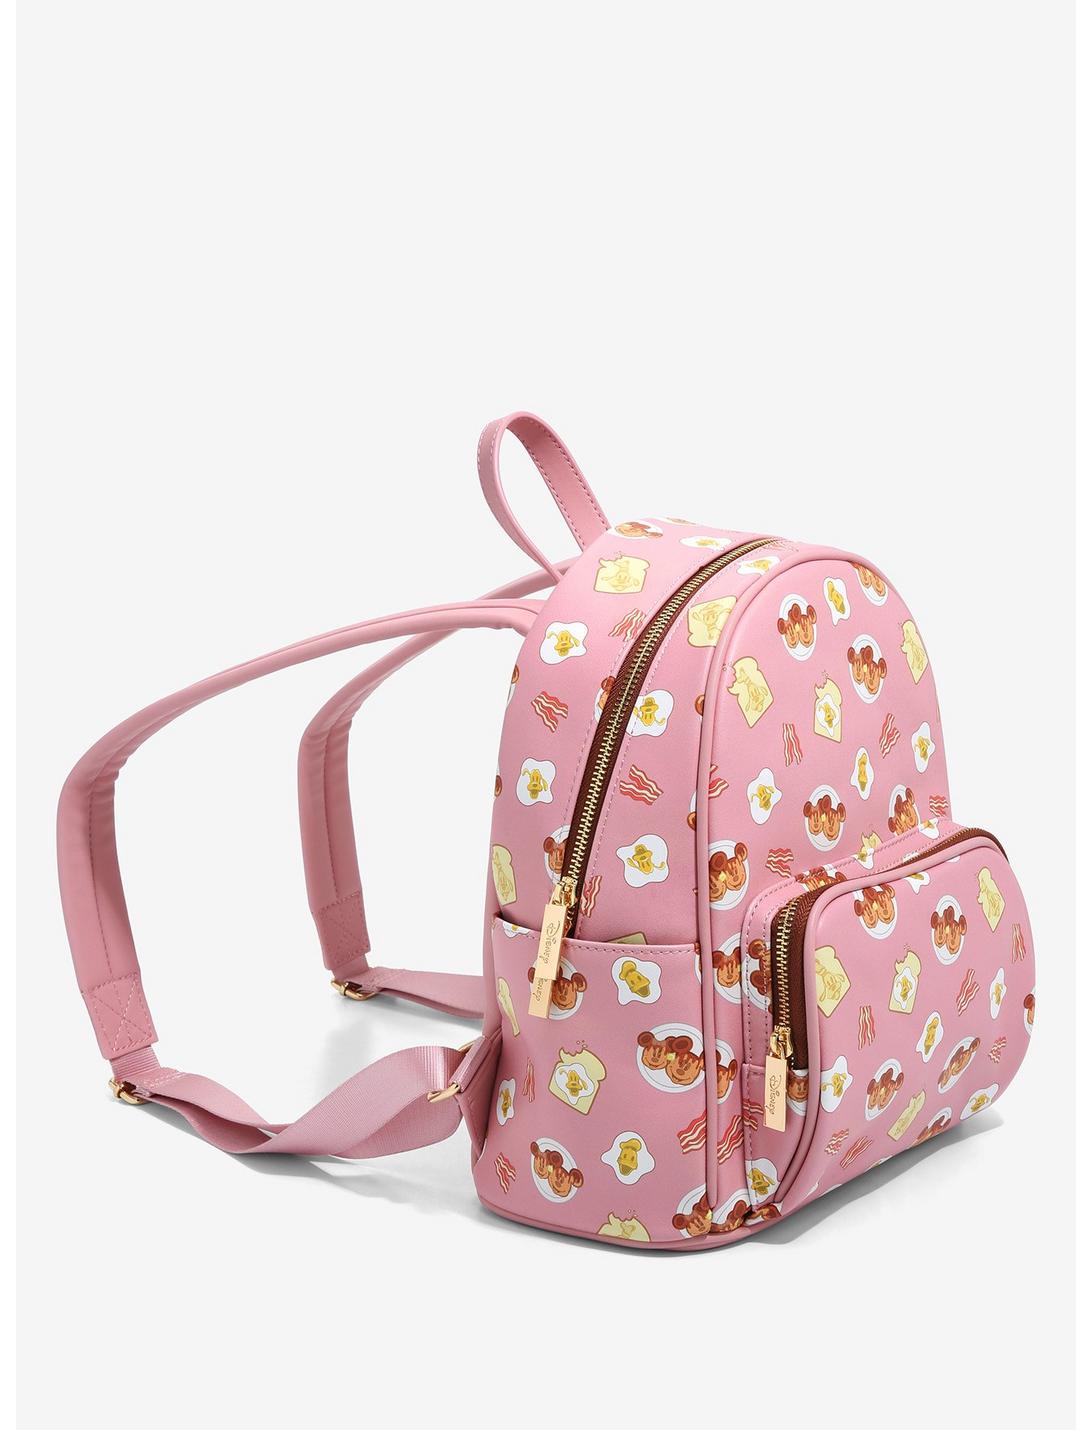 Danielle Nicole Disney Mickey & Friends Breakfast Mini Backpack ...